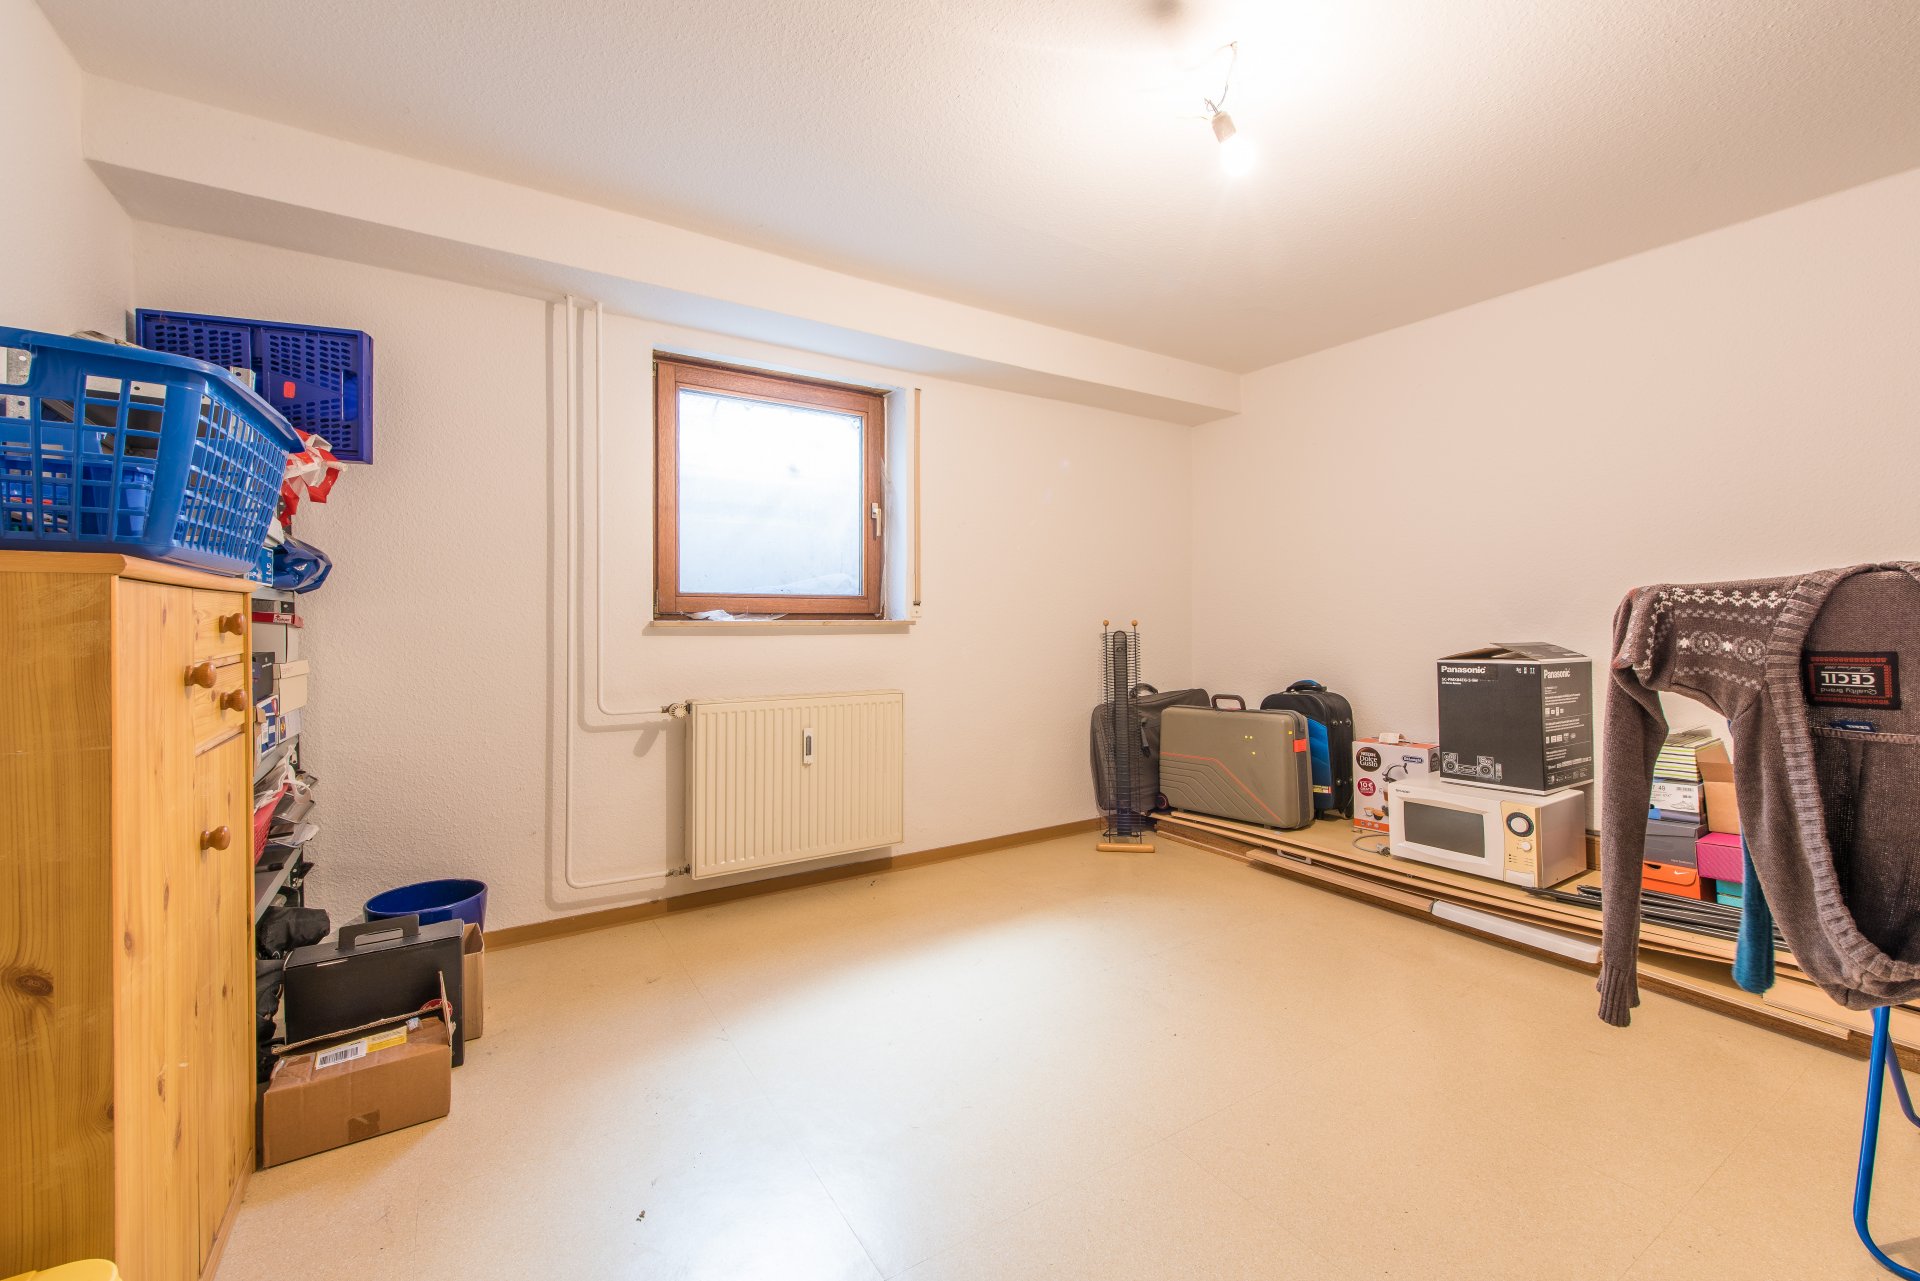 Im Keller haben Sie einen eigenen beheizbaren Hobbyram mit tageslicht und Heizung und einen zusätzlichen Kellerraum - Oliver Reifferscheid - Immobilienmakler Darmstadt